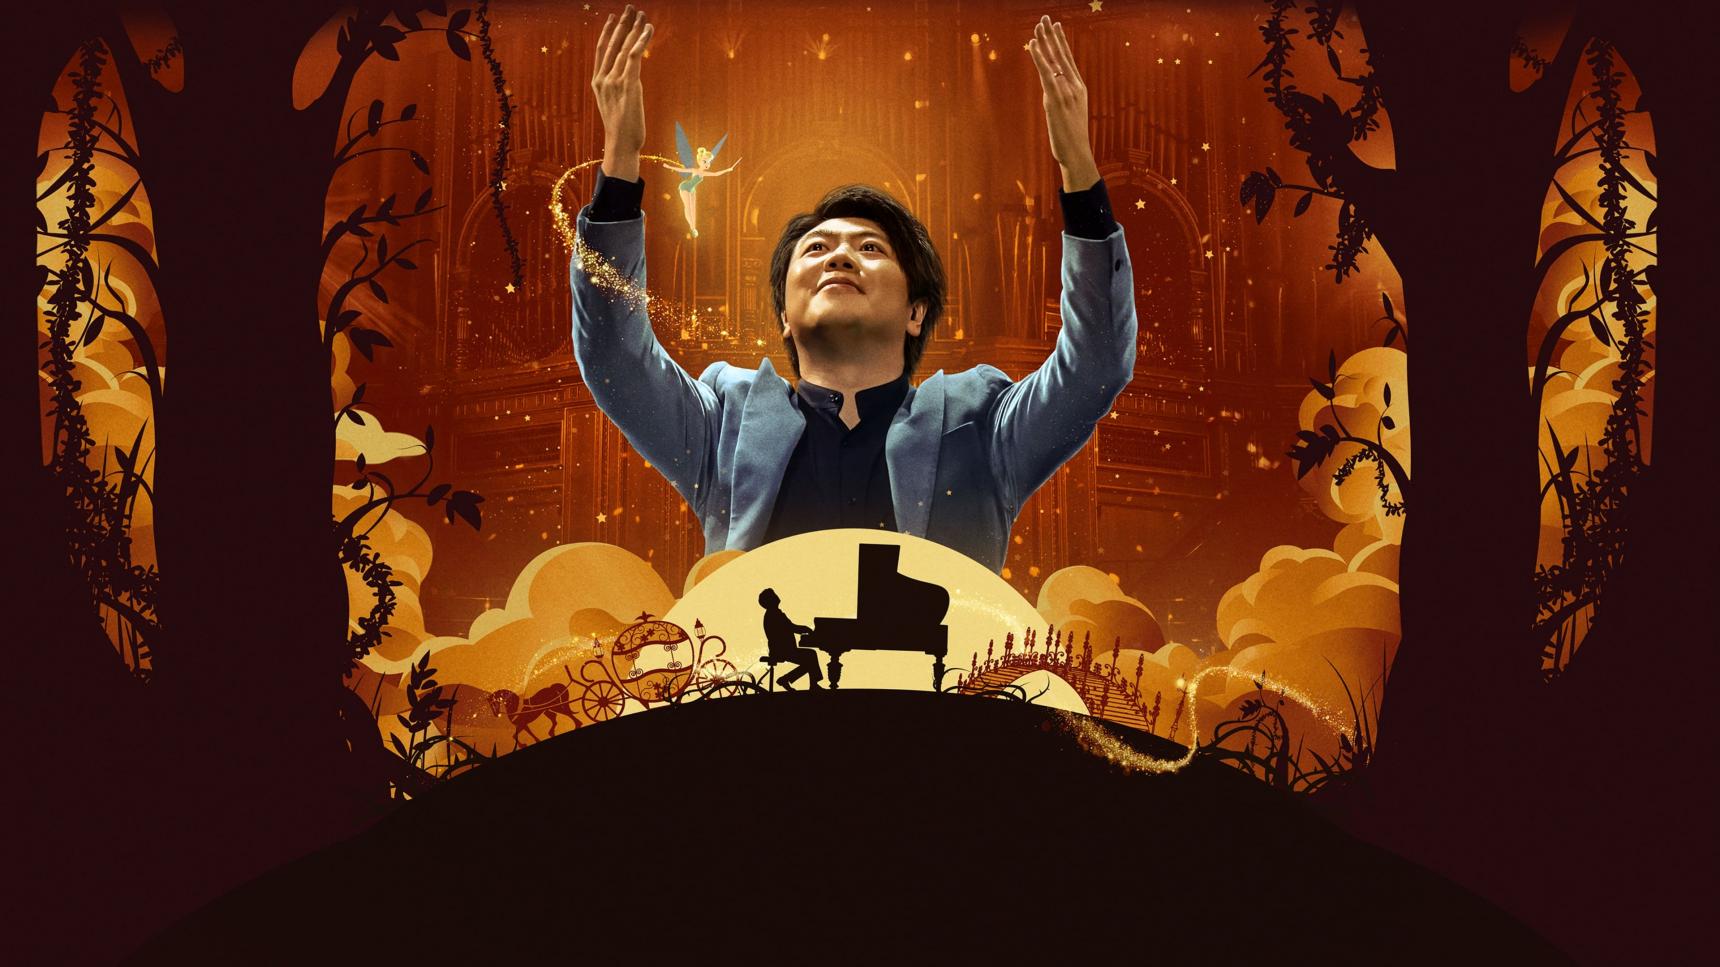 poster de Lang Lang al piano: La mejor música de Disney